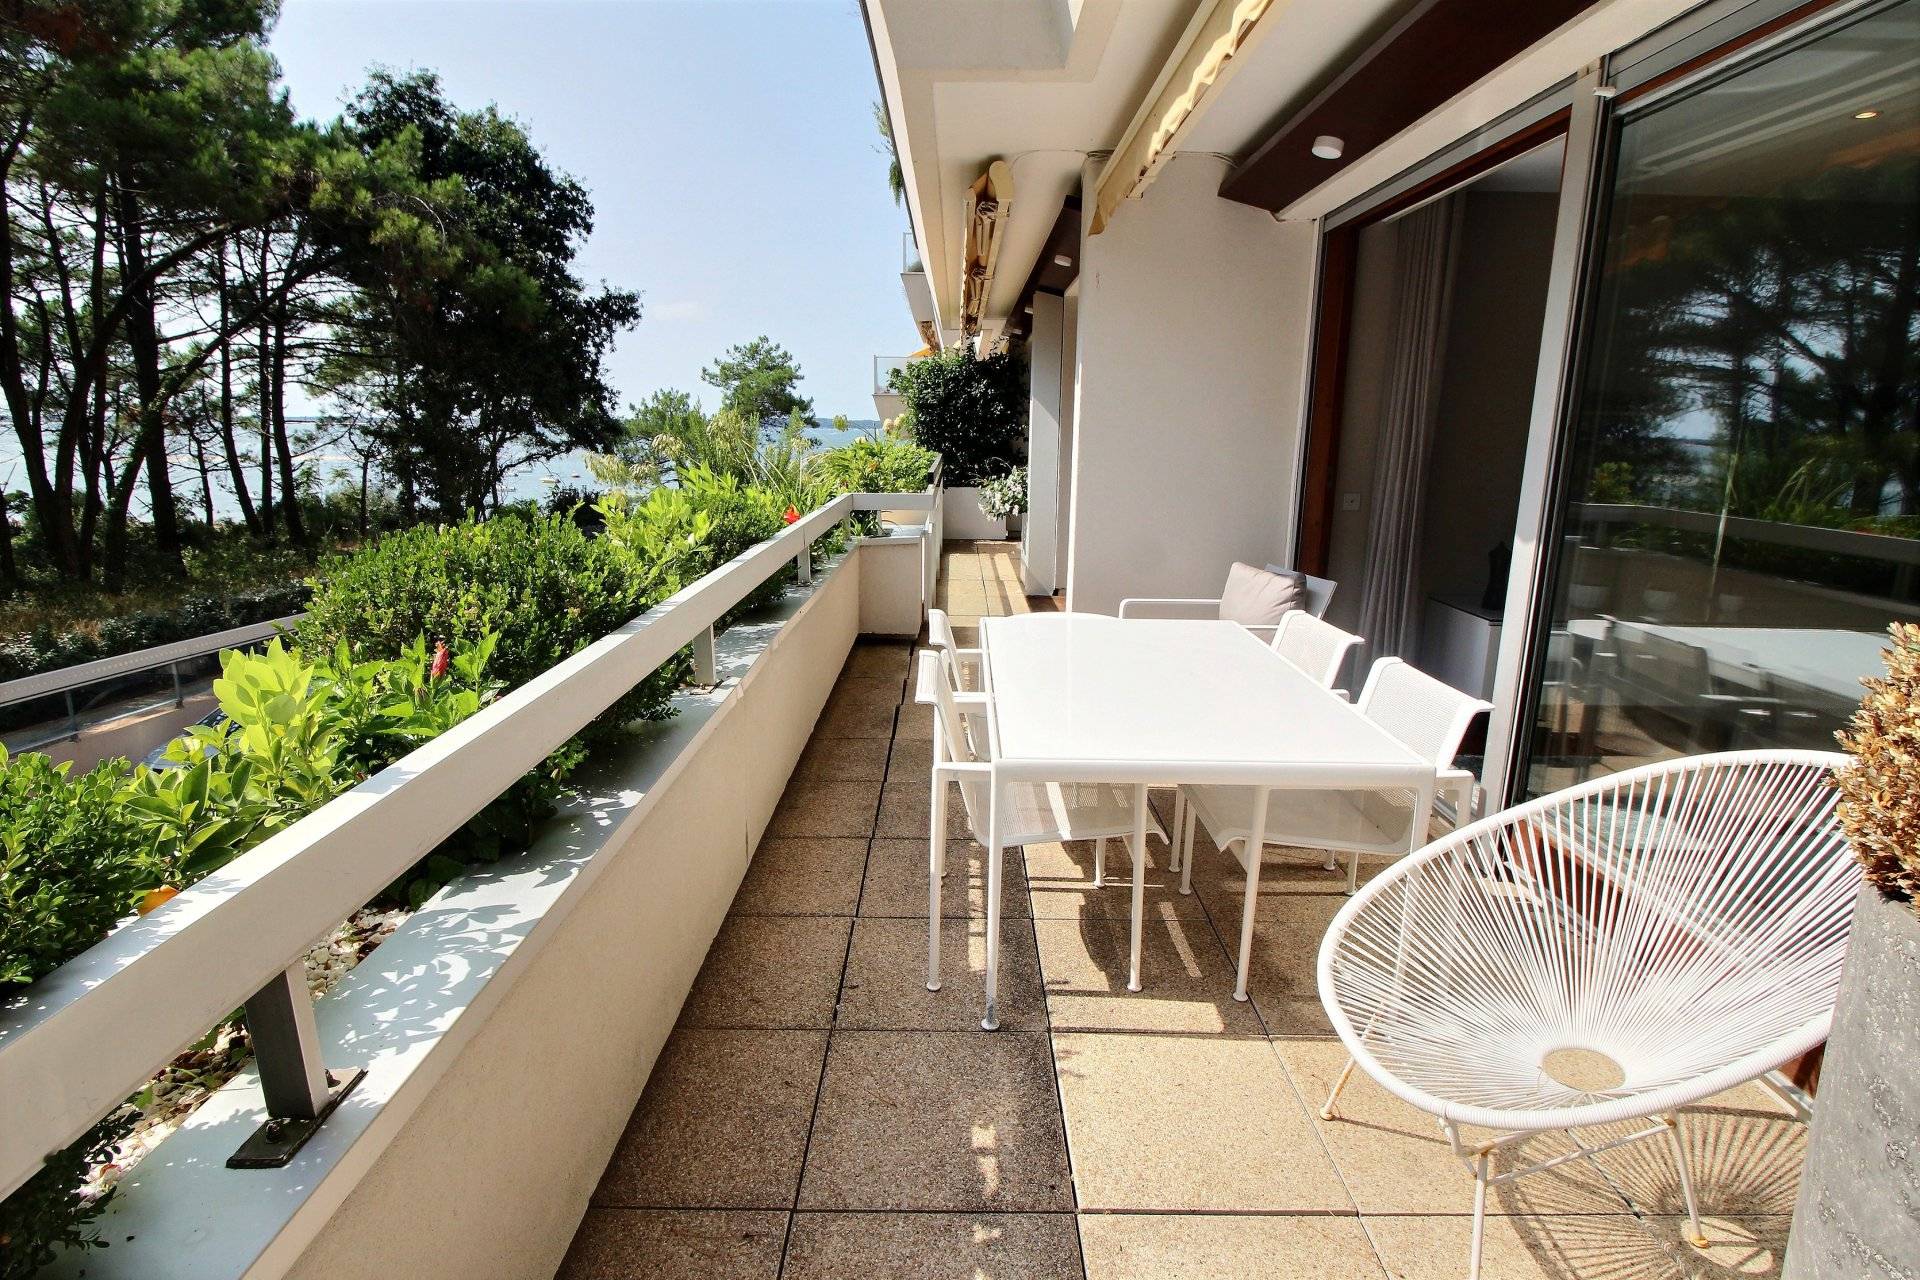 Vente appartement de standing avec terrasse vue bassin et accès direct plage ARCACHON